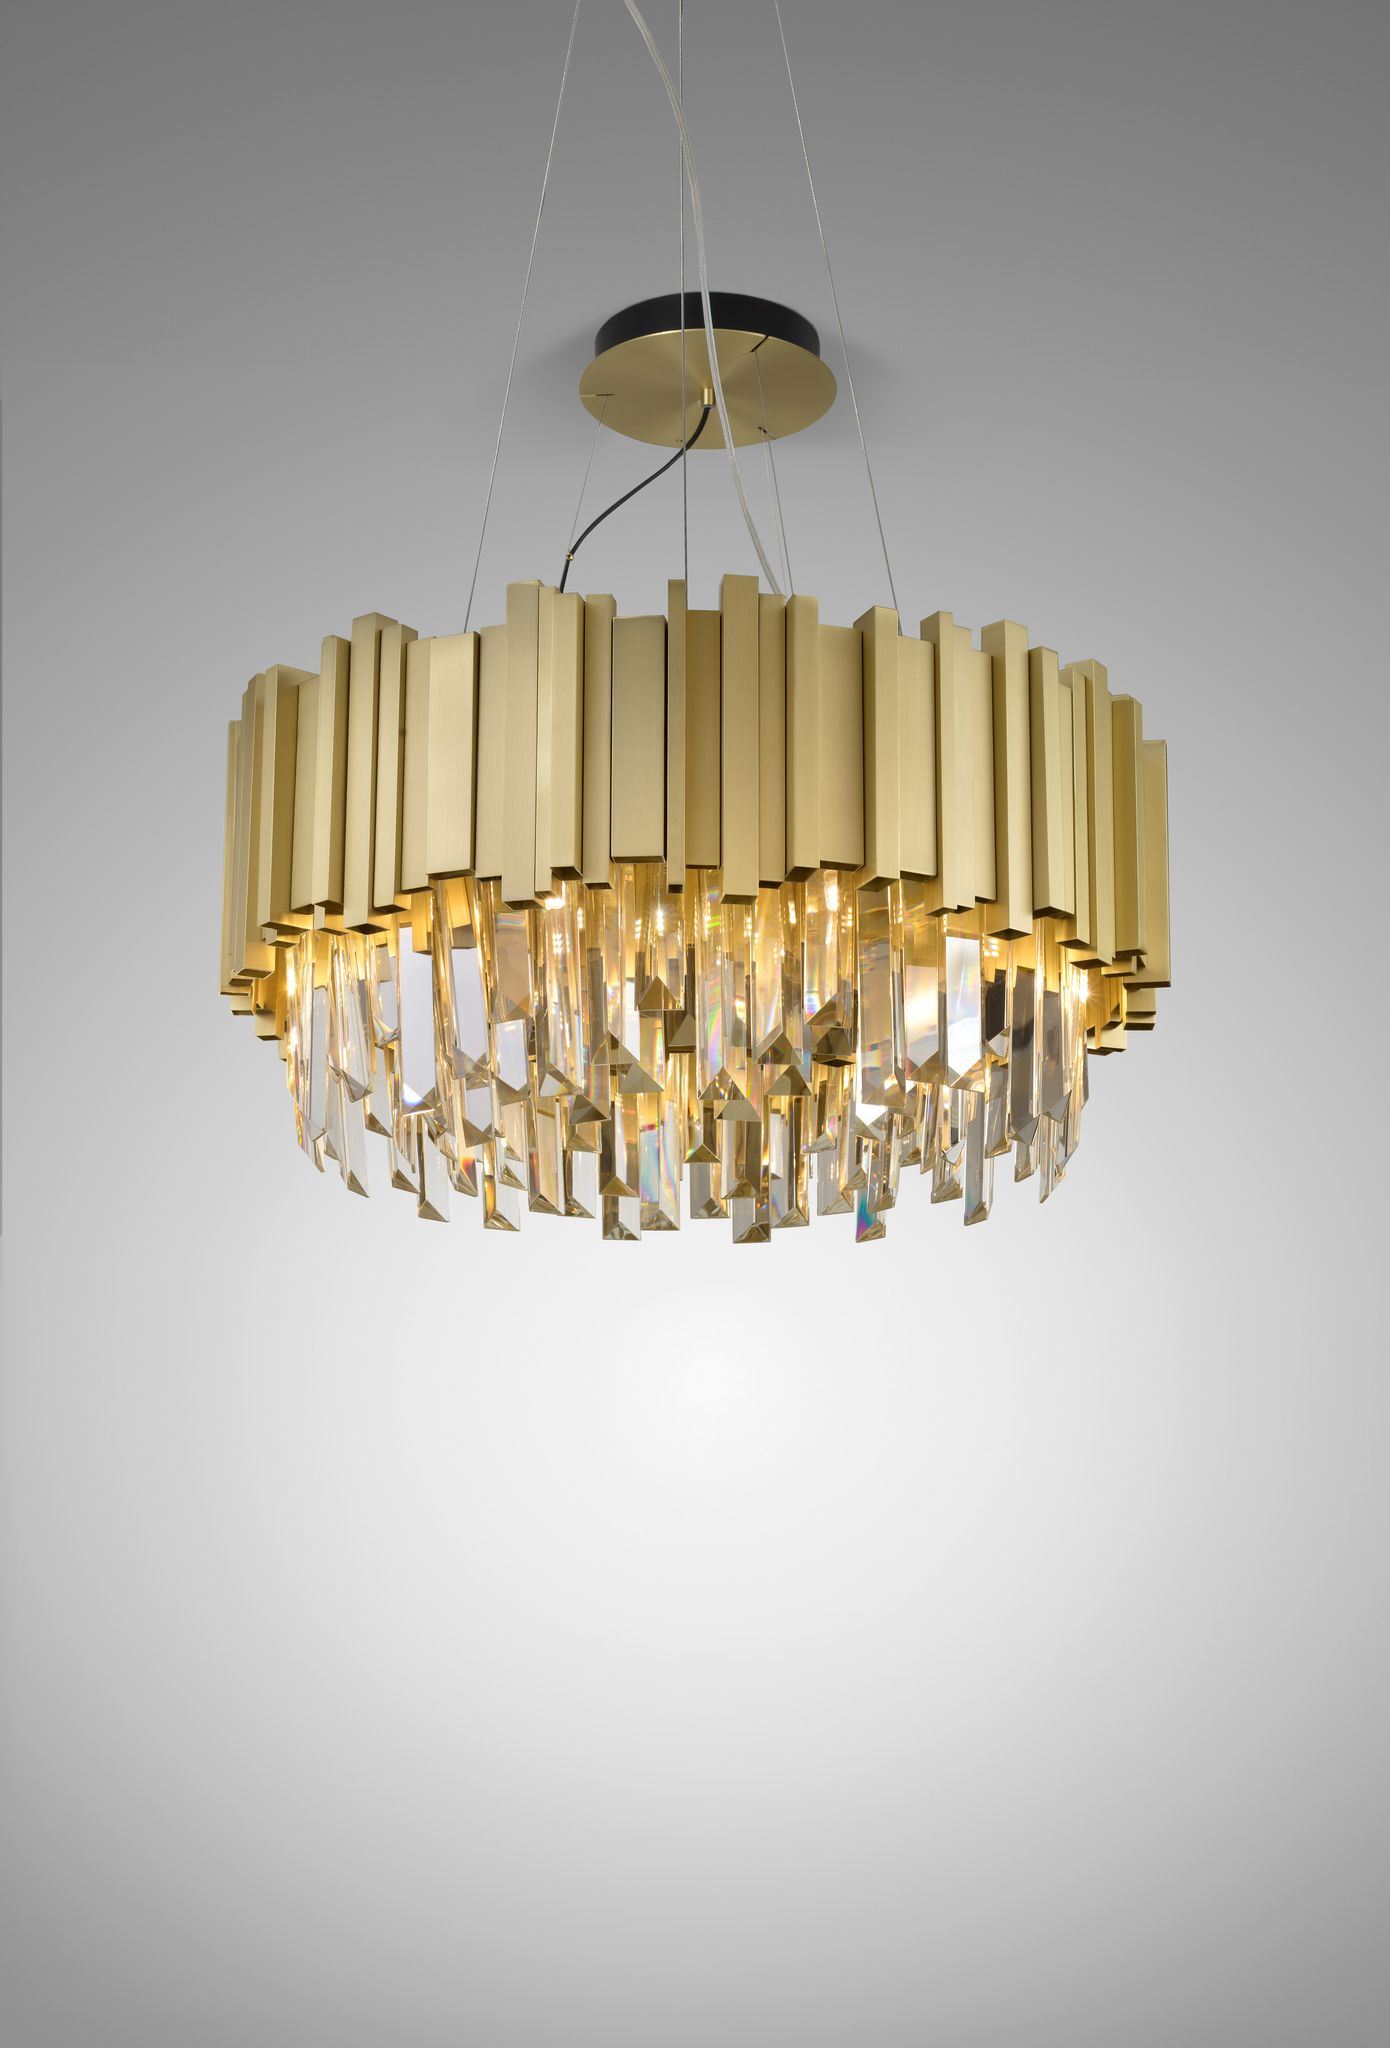 גופי תאורה מקטגוריית: מנורות תליה ,שם המוצר: BIATRIS CIRCLE